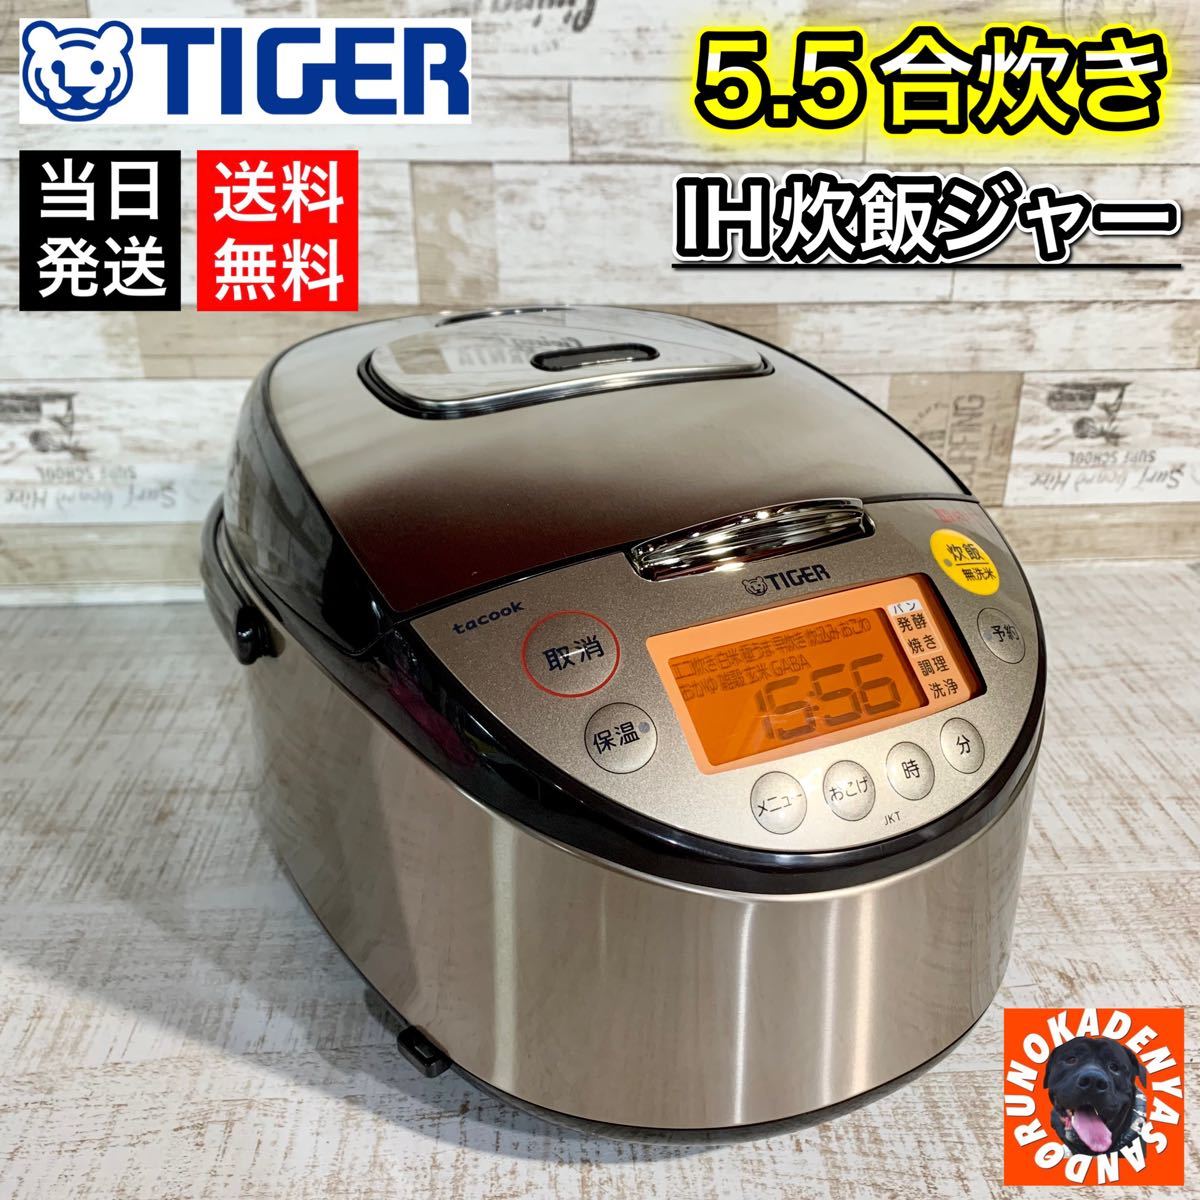 【きれピカ☆】タイガー IH炊飯ジャー 5.5合炊き 